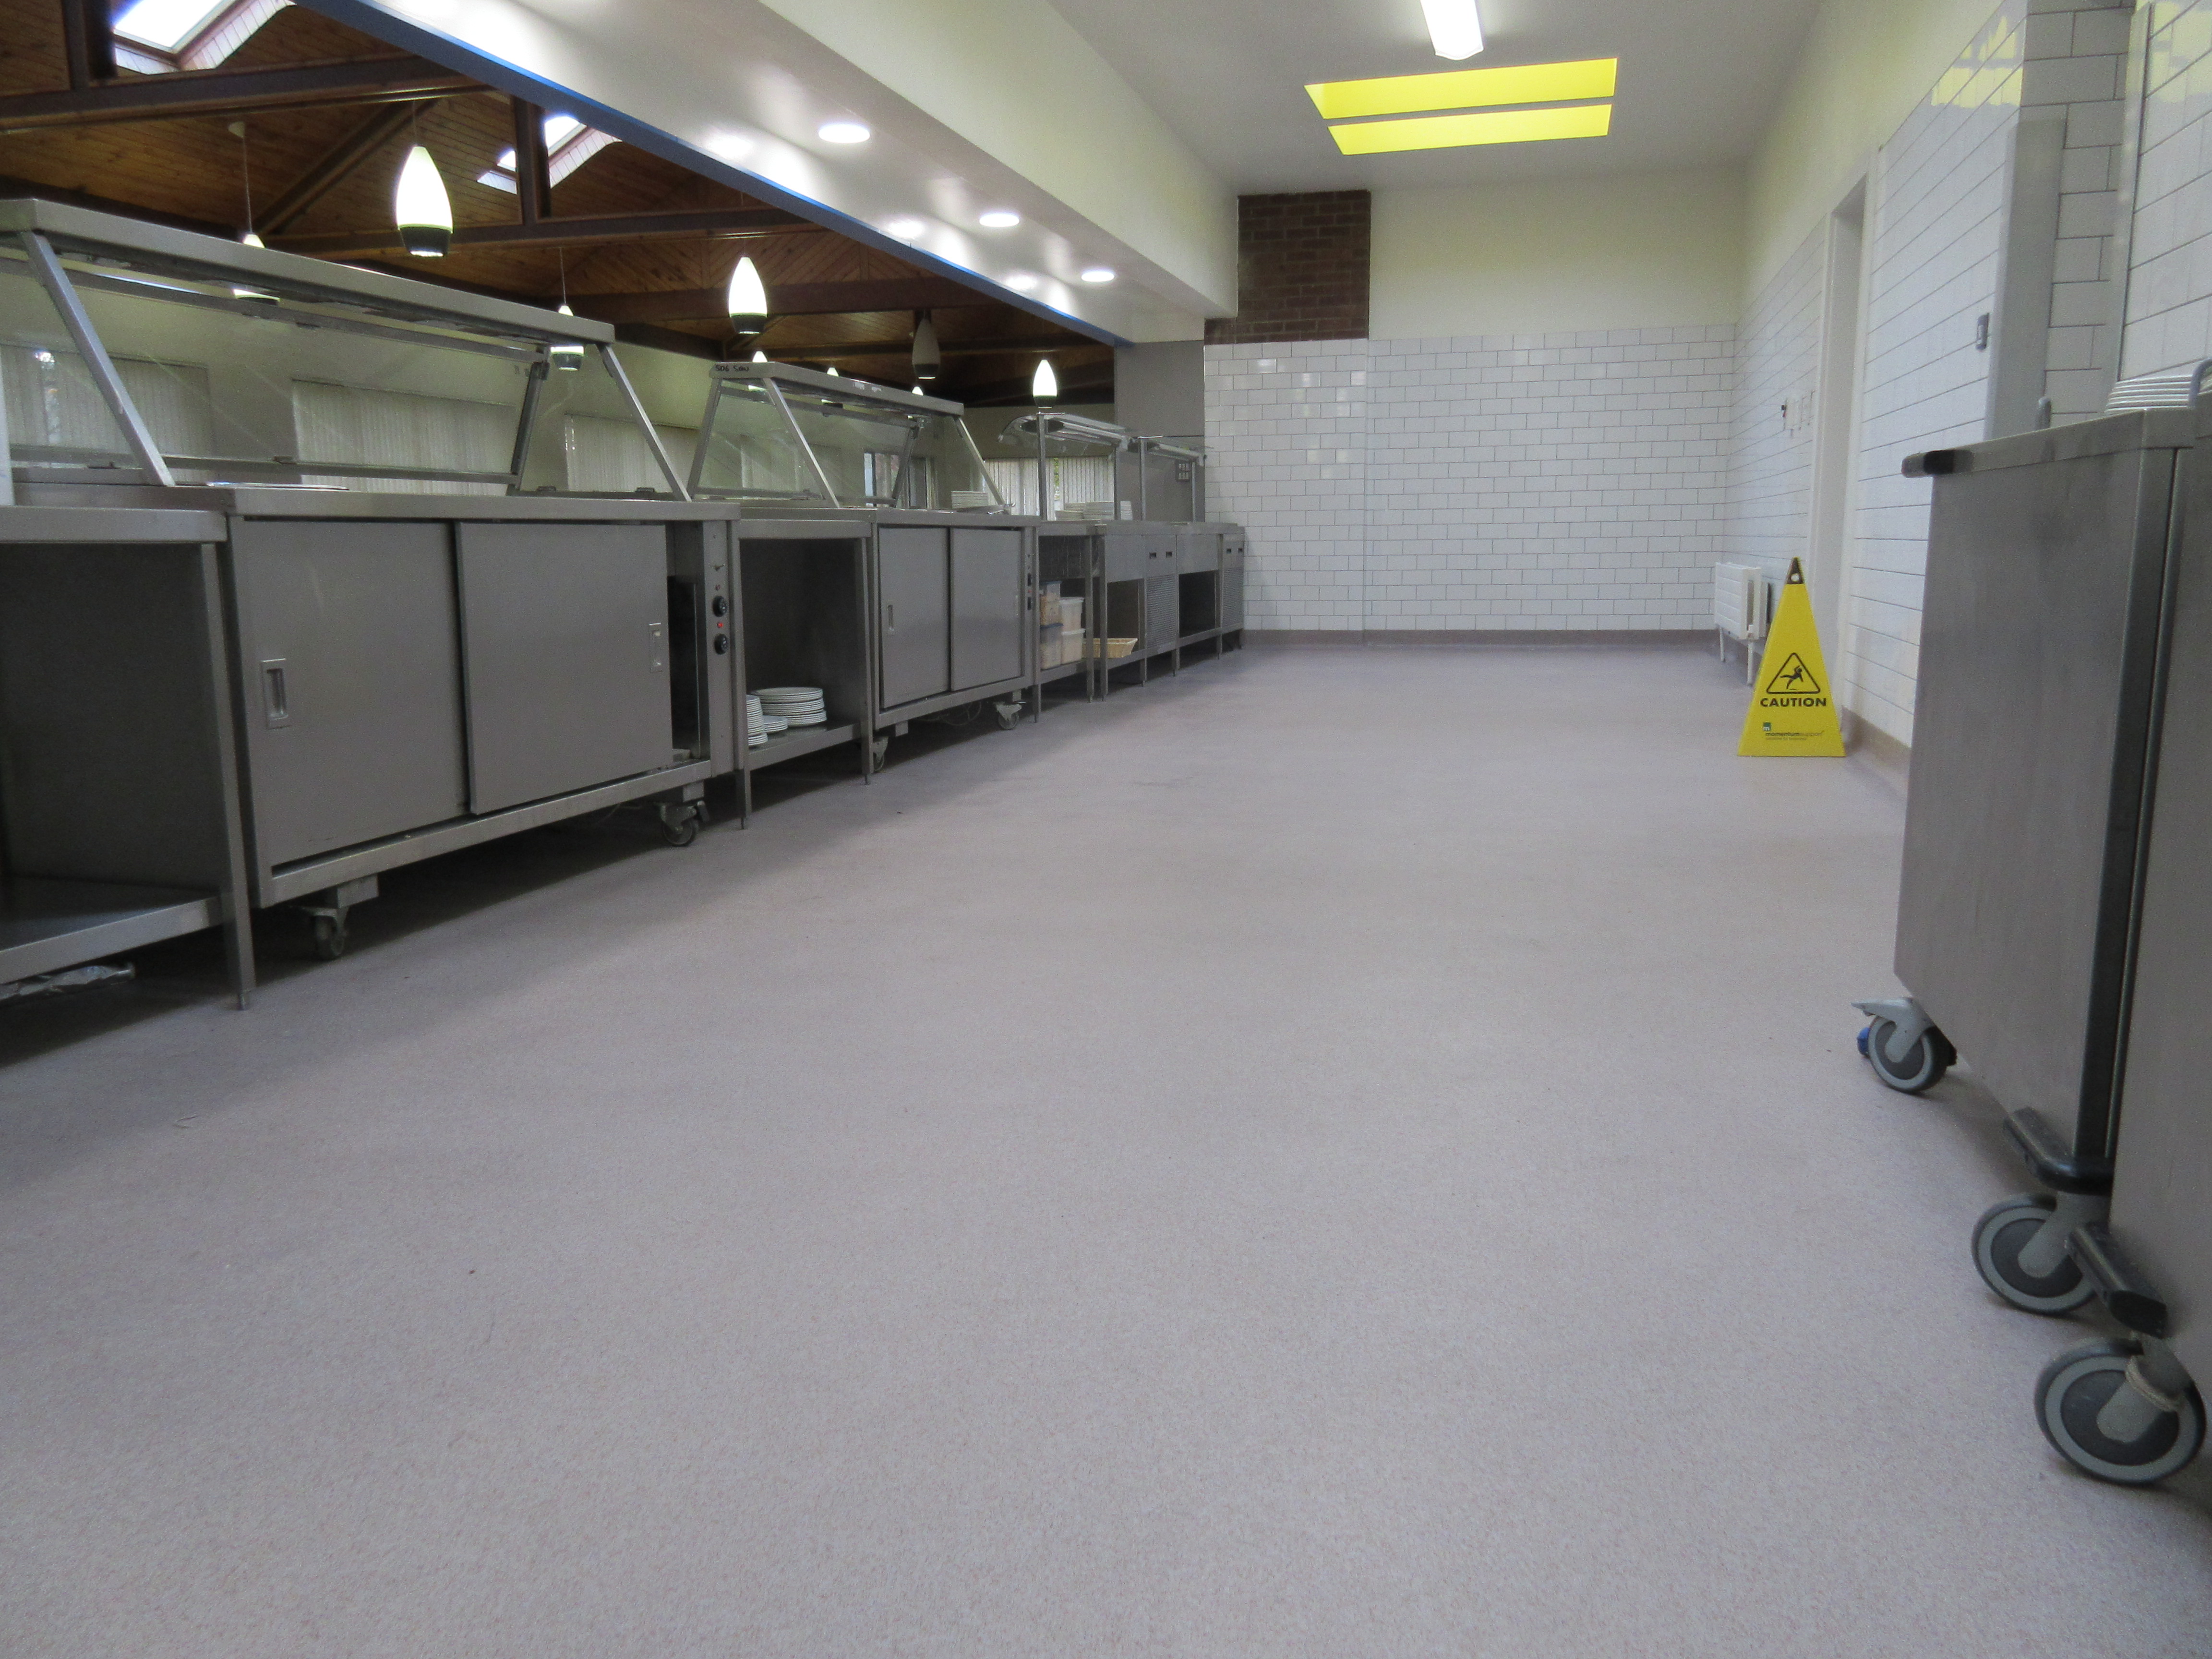 Commercial kitchen clean room floor